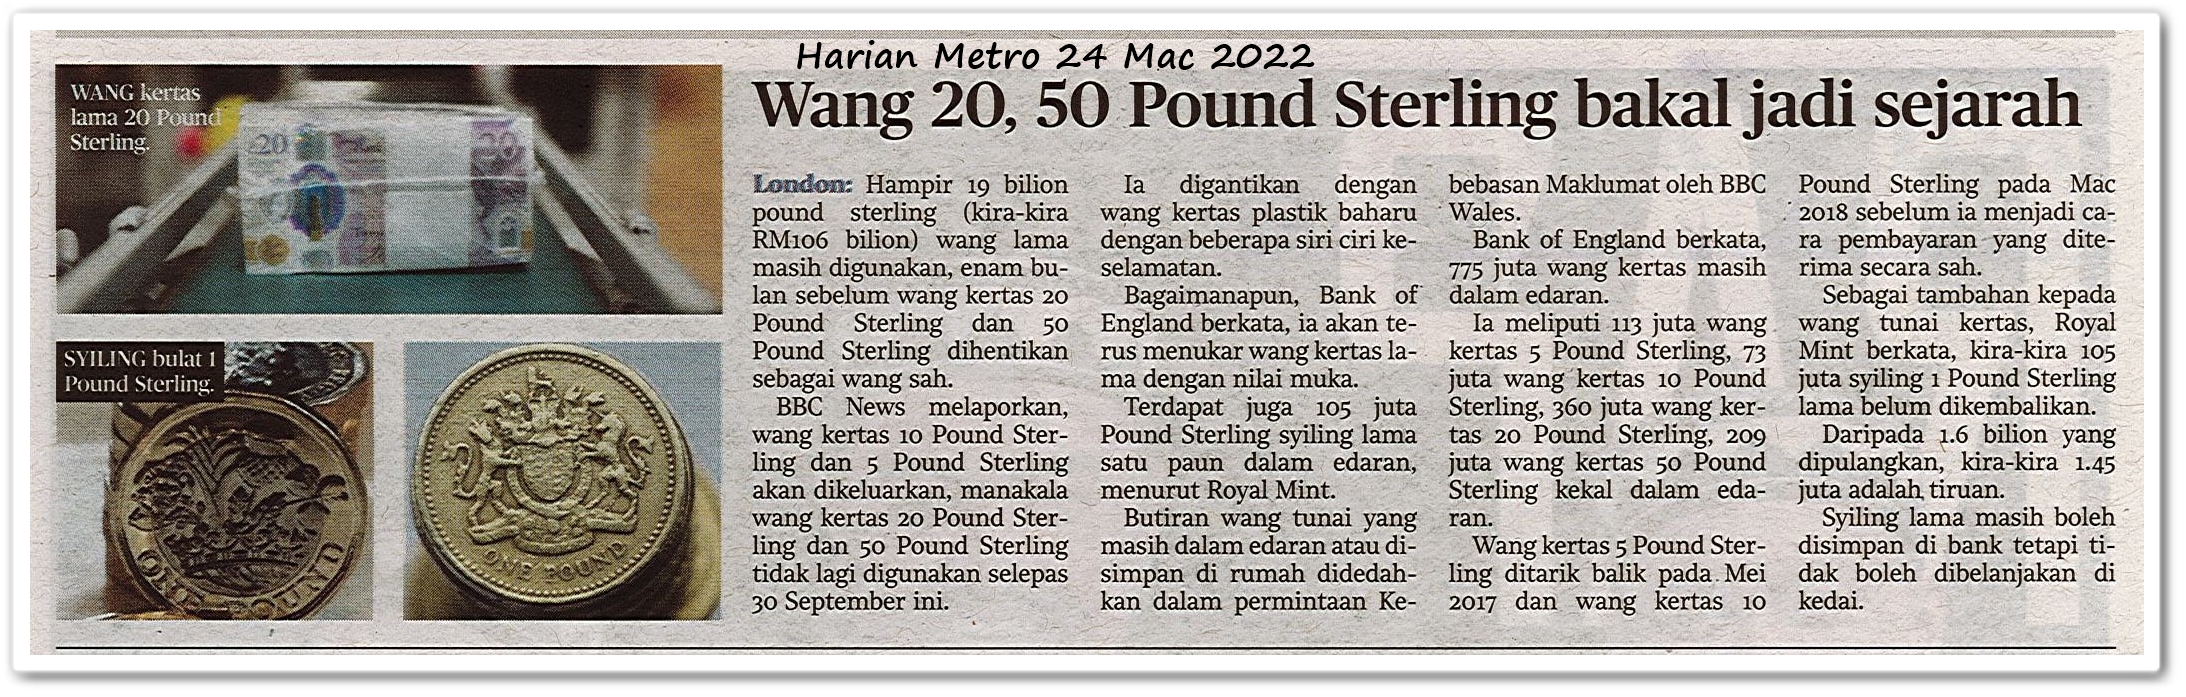 Wang 20, 50 Pound Sterling bakal jadi sejarah - Keratan akhbar Harian Metro 24 Mac 2022